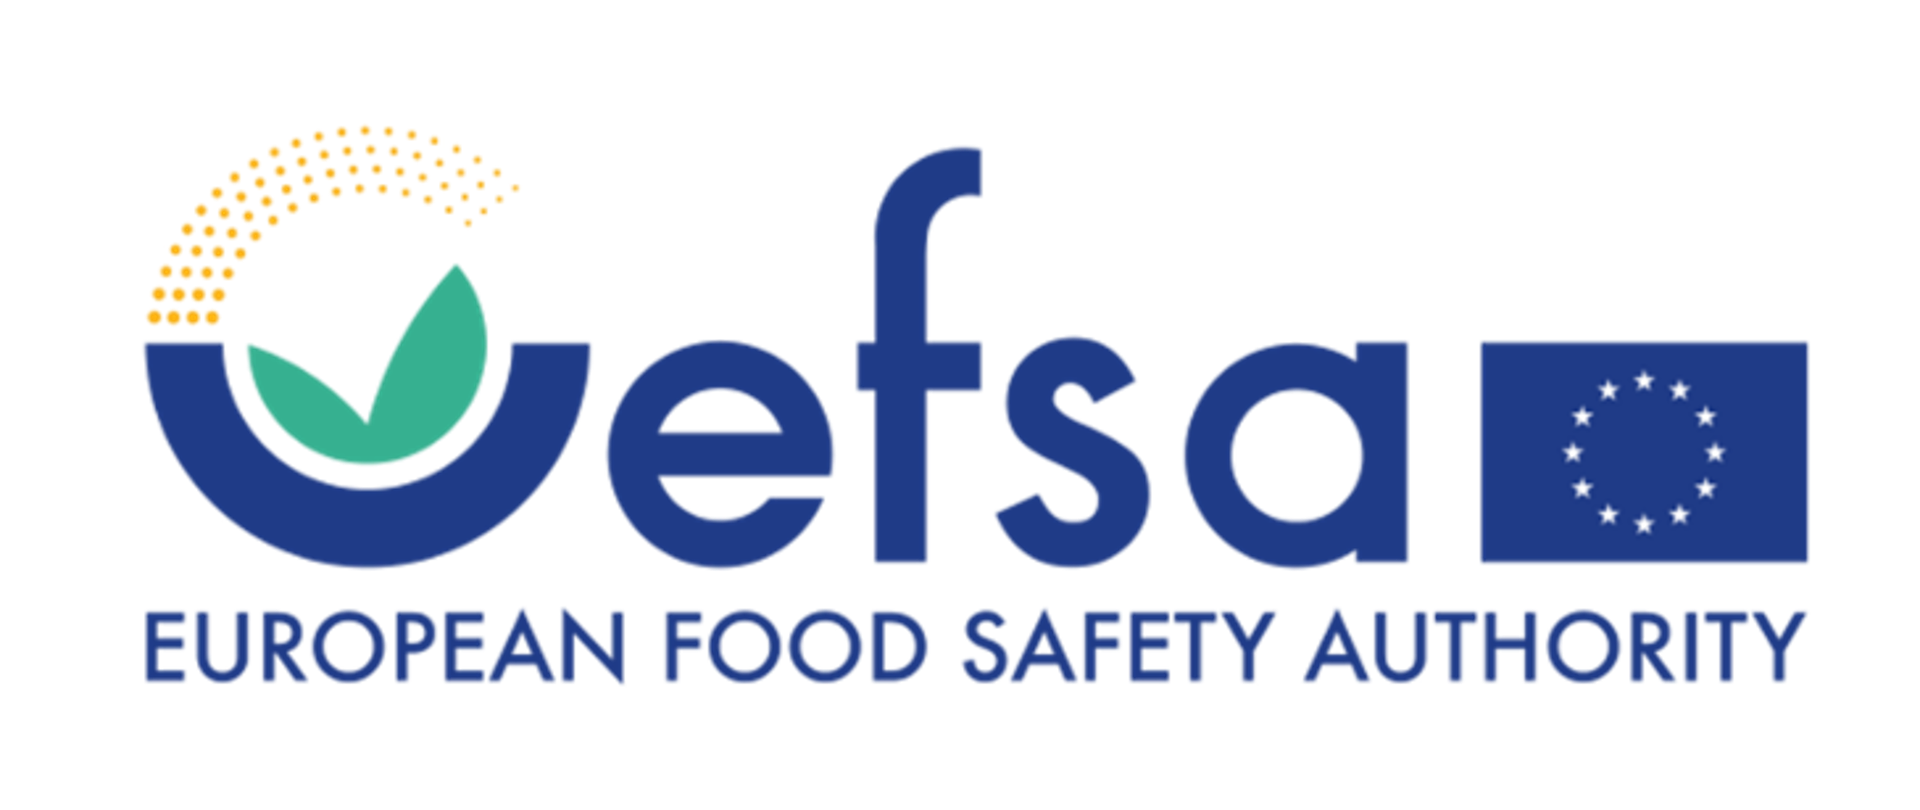 European Food Safety Authority - logo